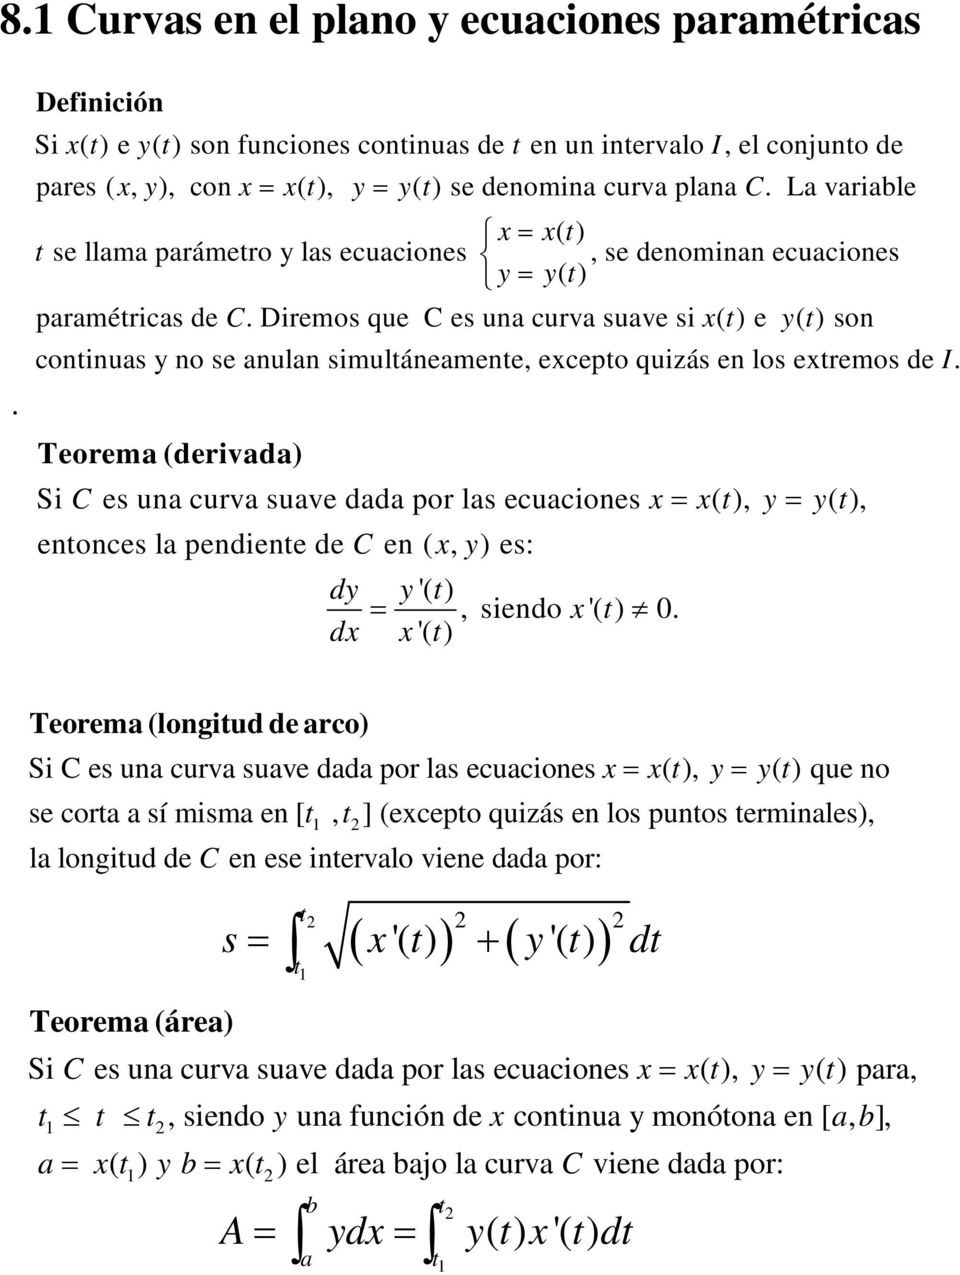 Teoem (deivd) Si C es un cuv suve dd po ls ecuciones = ( ), = ( ), enonces l pendiene de C en (, ) es: d '( ) =, siendo '( ) 0.